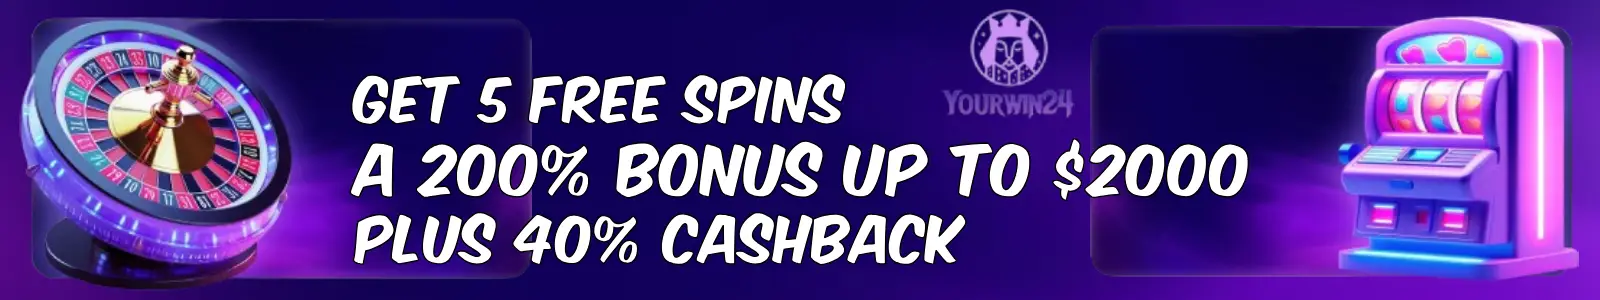 yourwin24 casino welcome bonus